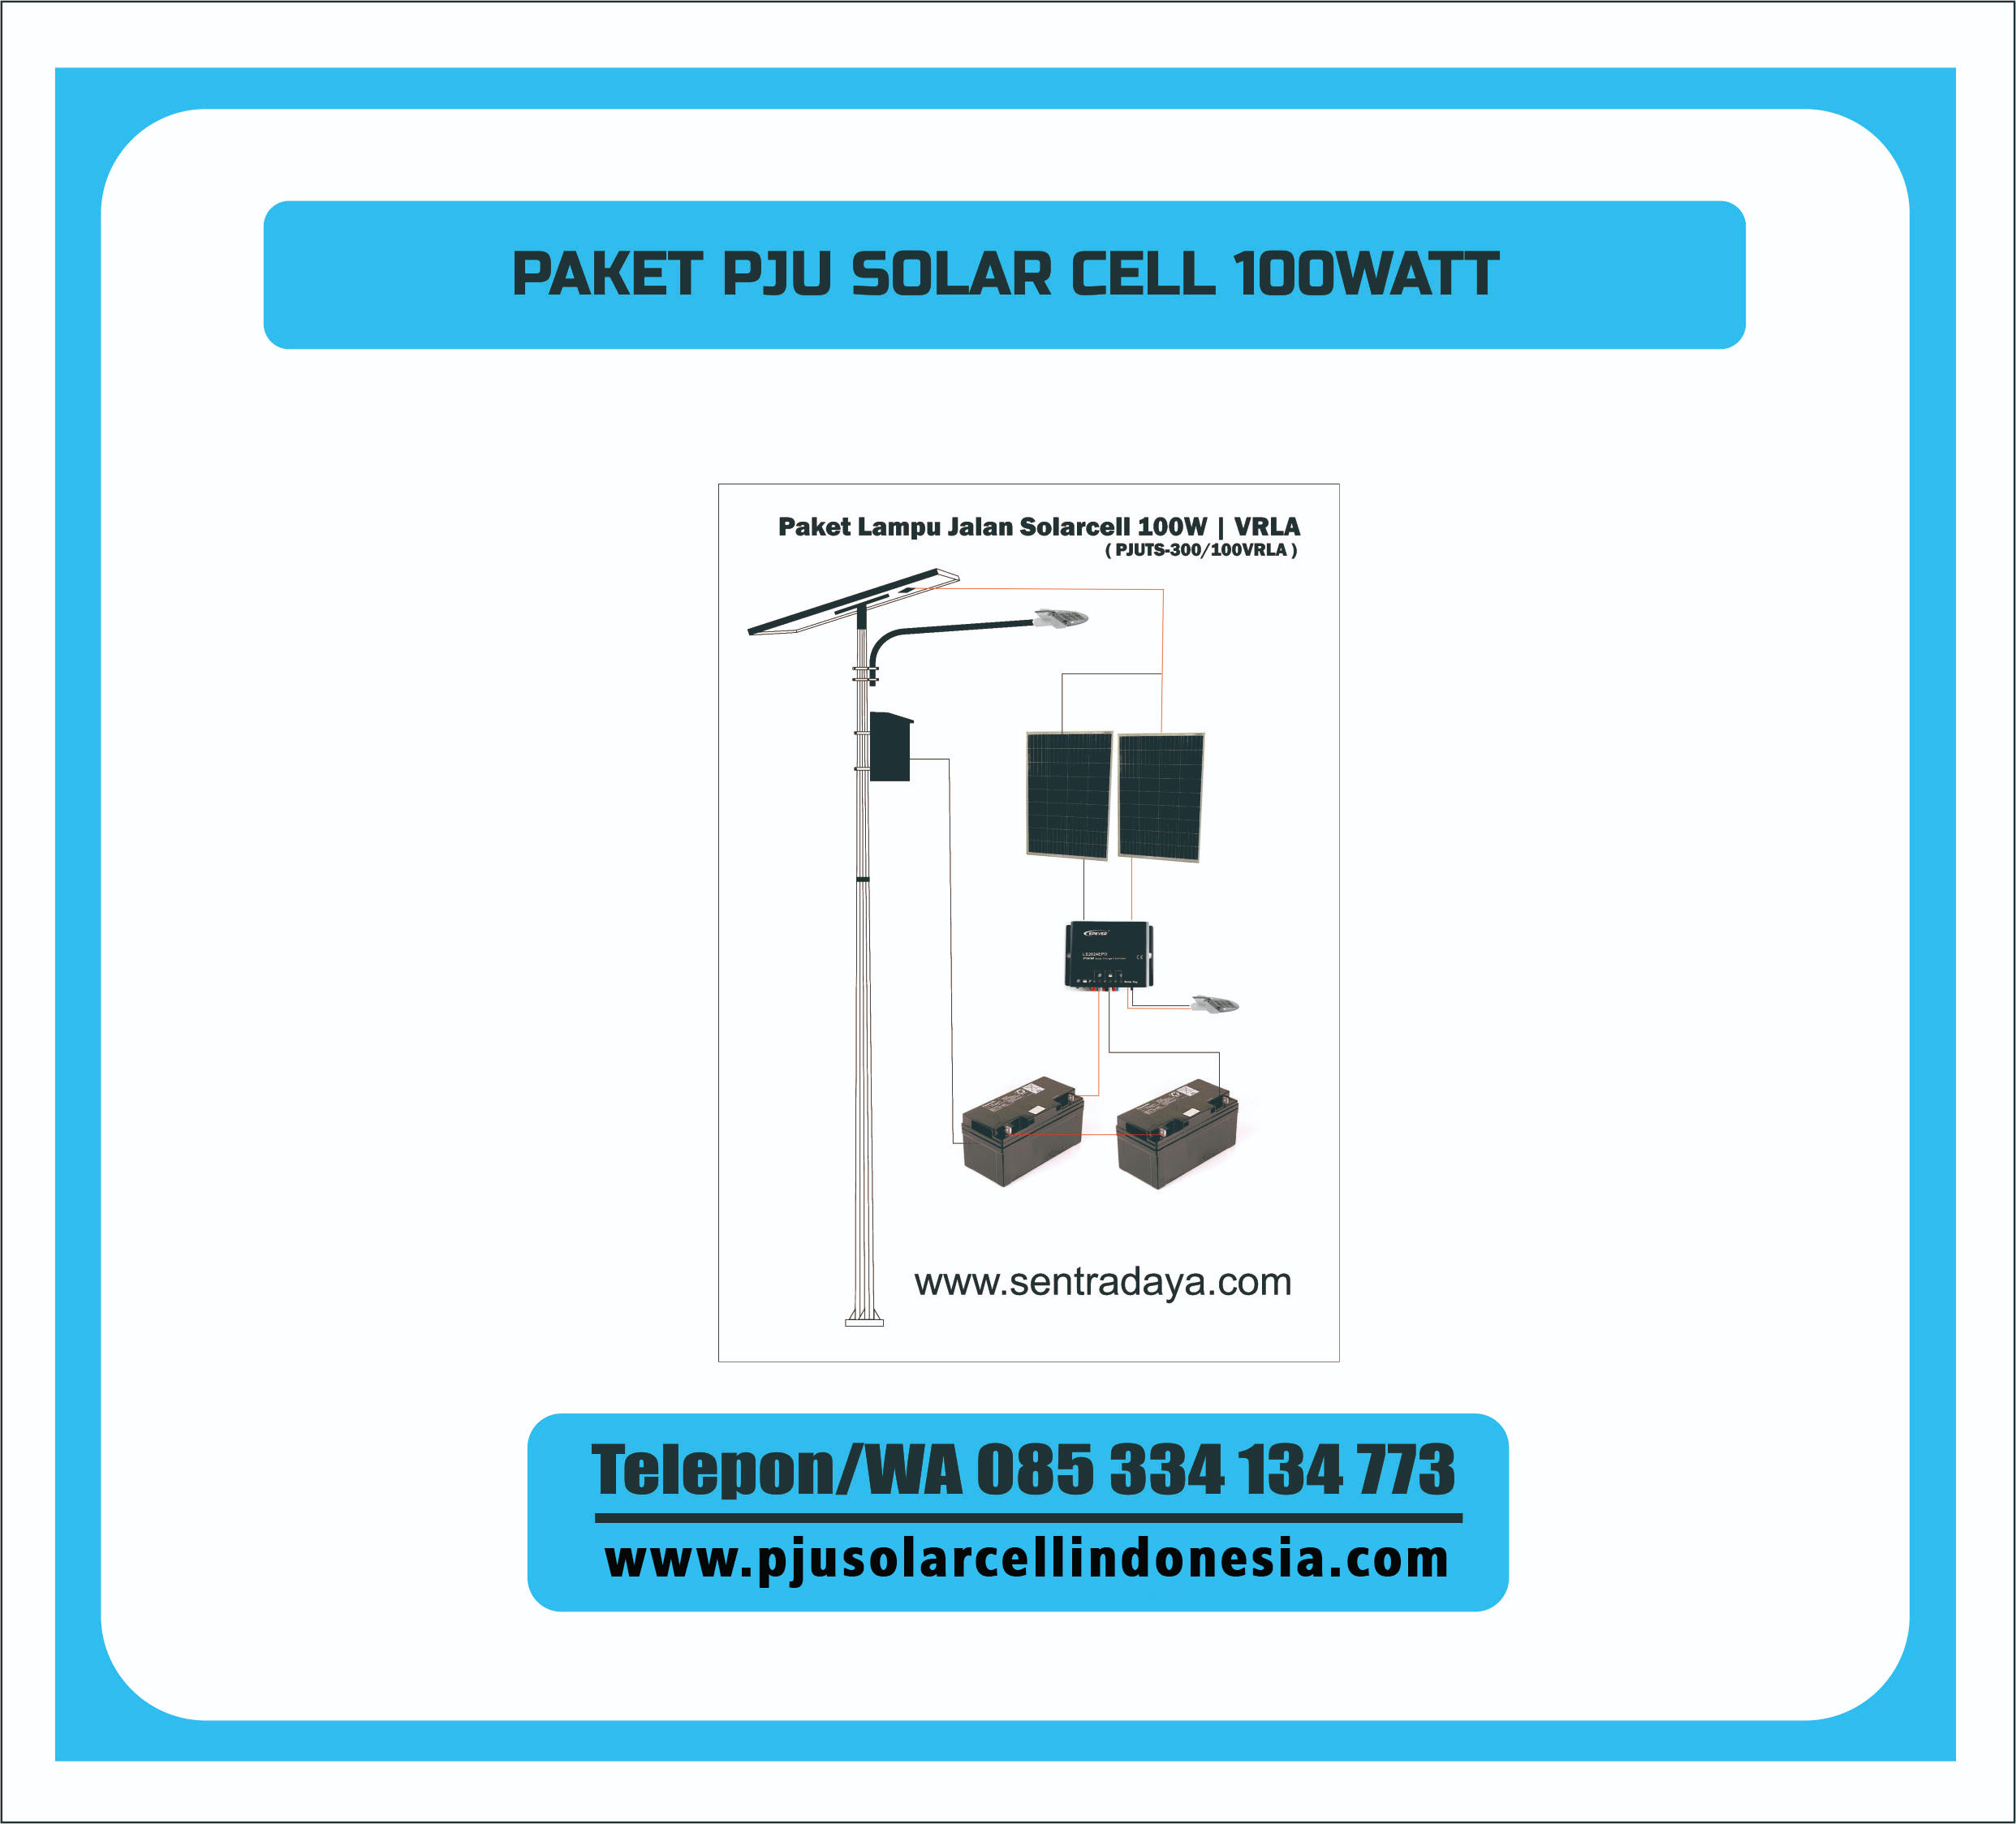 Pju Tenaga Surya 100watt Pju Solarcell 100watt Termurah Pju Solar Cell Indonesia Proyek pemasangan lampu pju di salah satu perumahan di sby. pju tenaga surya 100watt pju